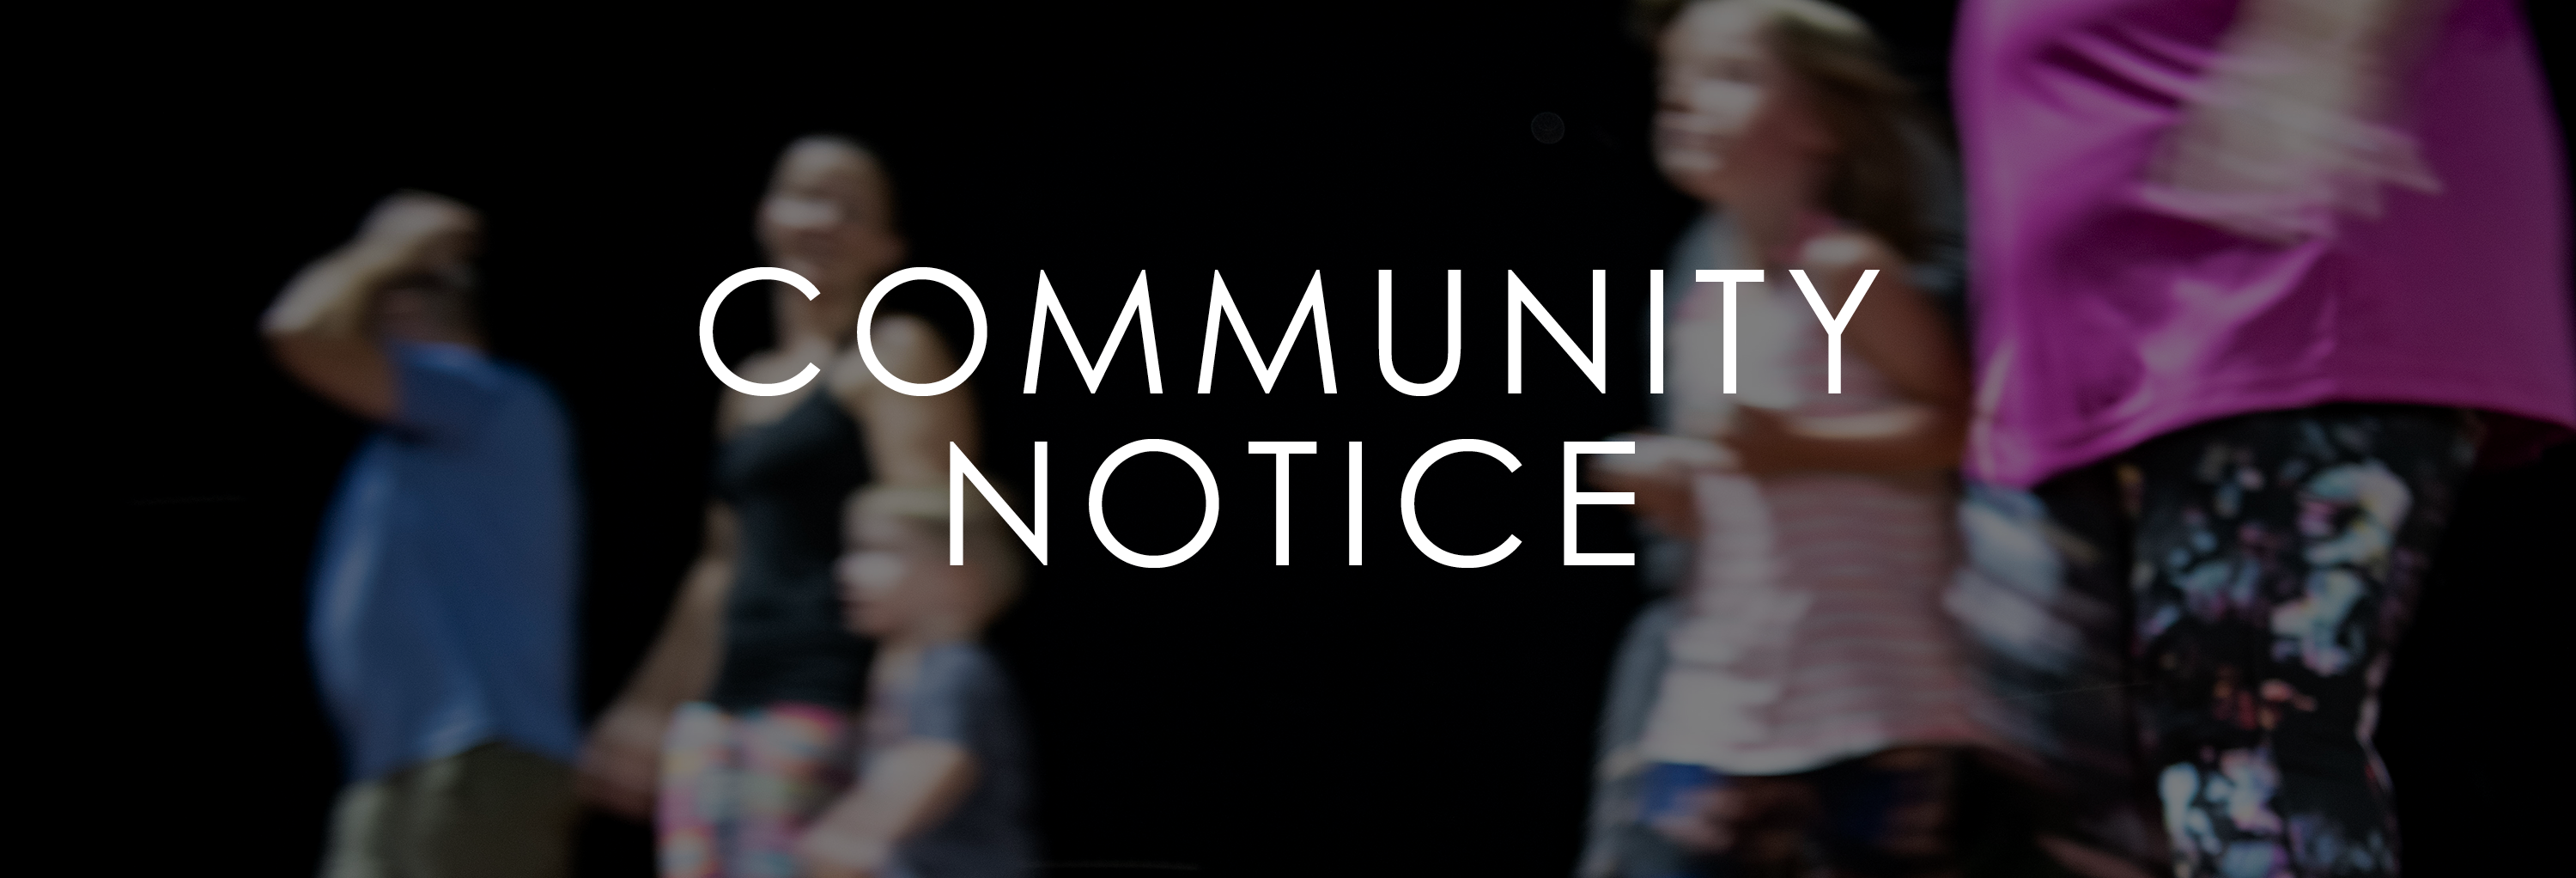 Community Notice Graphic